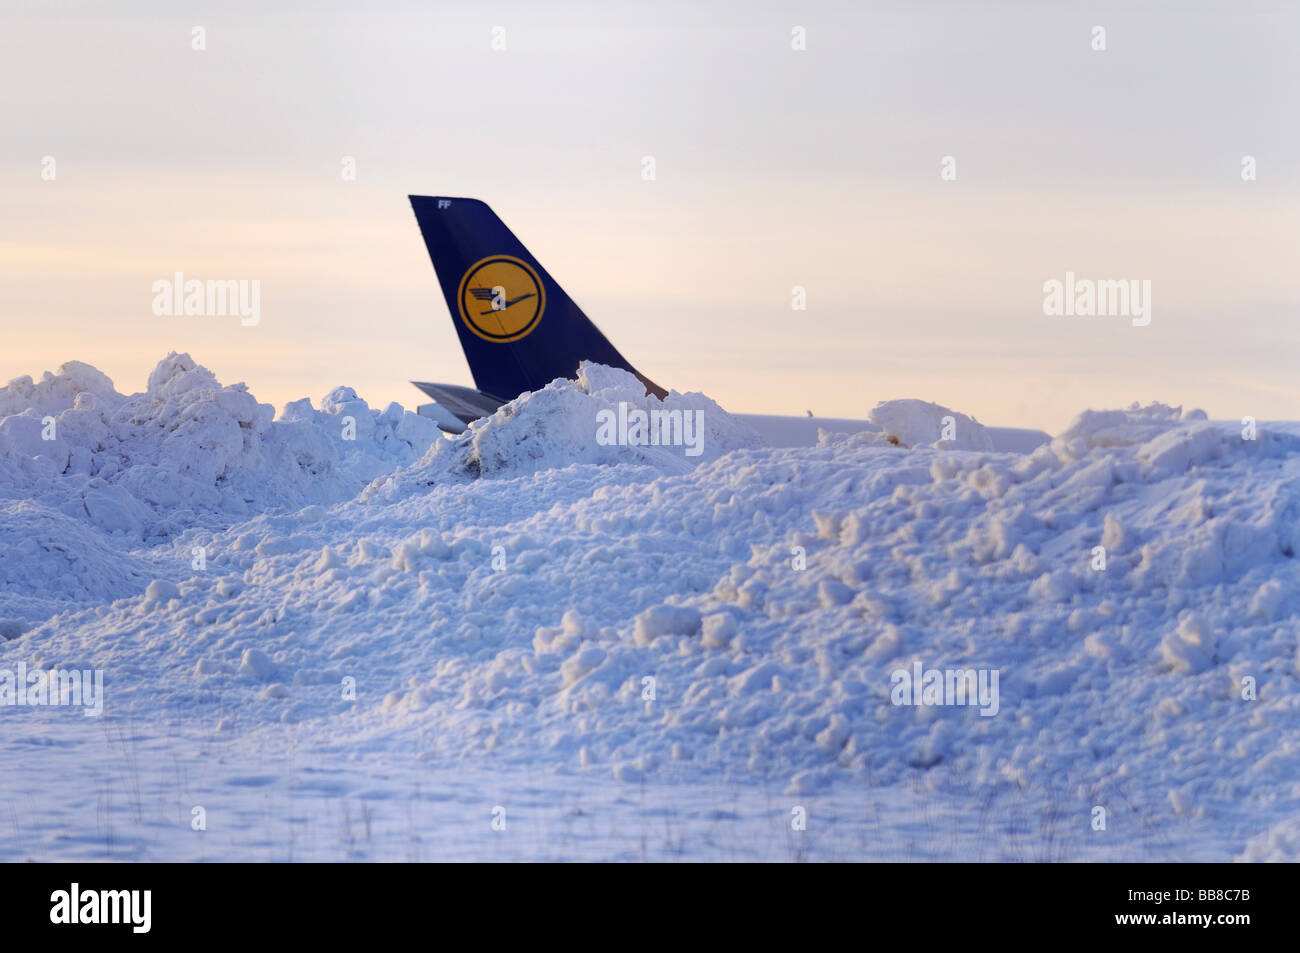 Lufthansa pinna di coda dietro cumuli di neve accanto a una pista di atterraggio Foto Stock